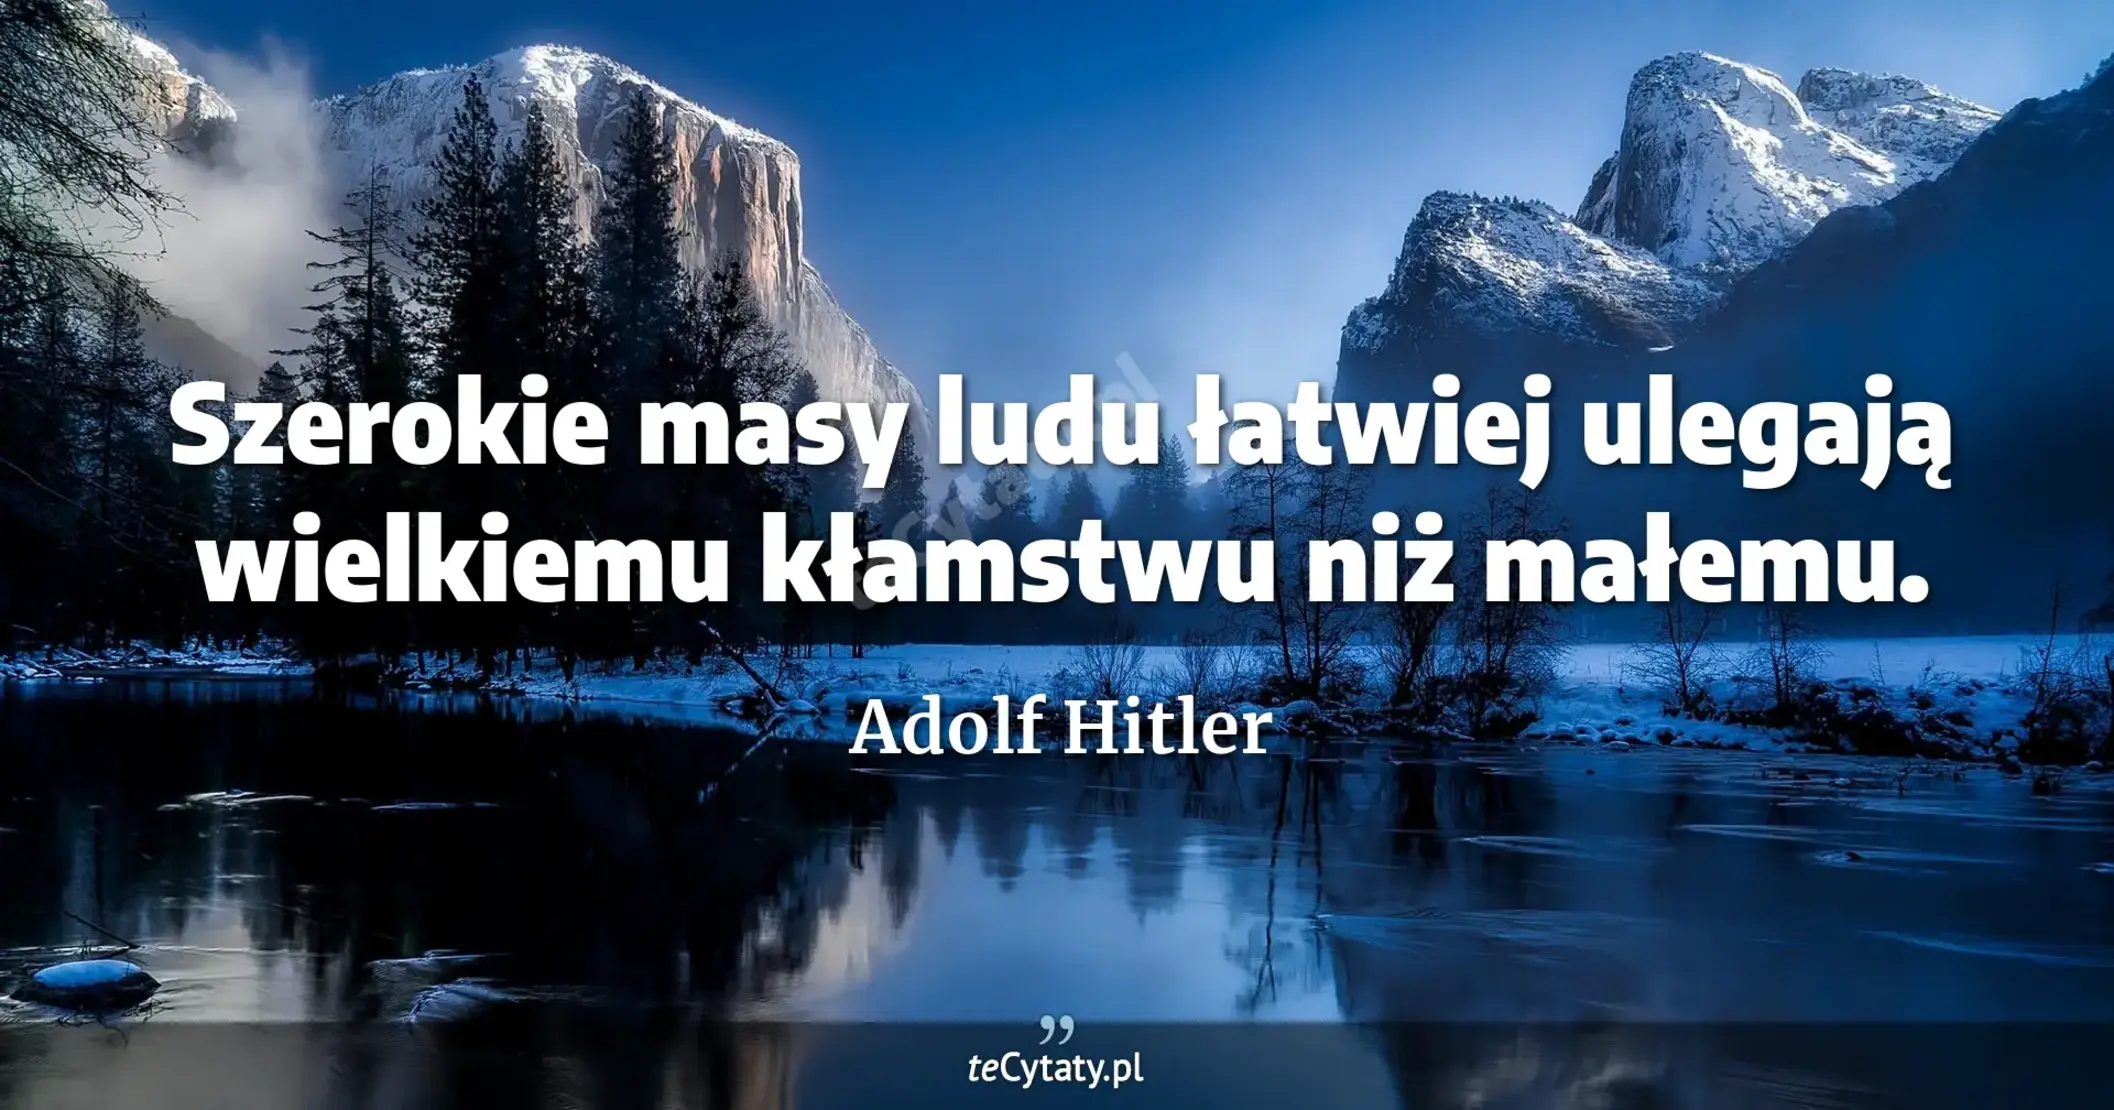 Szerokie masy ludu łatwiej ulegają wielkiemu kłamstwu niż małemu. - Adolf Hitler